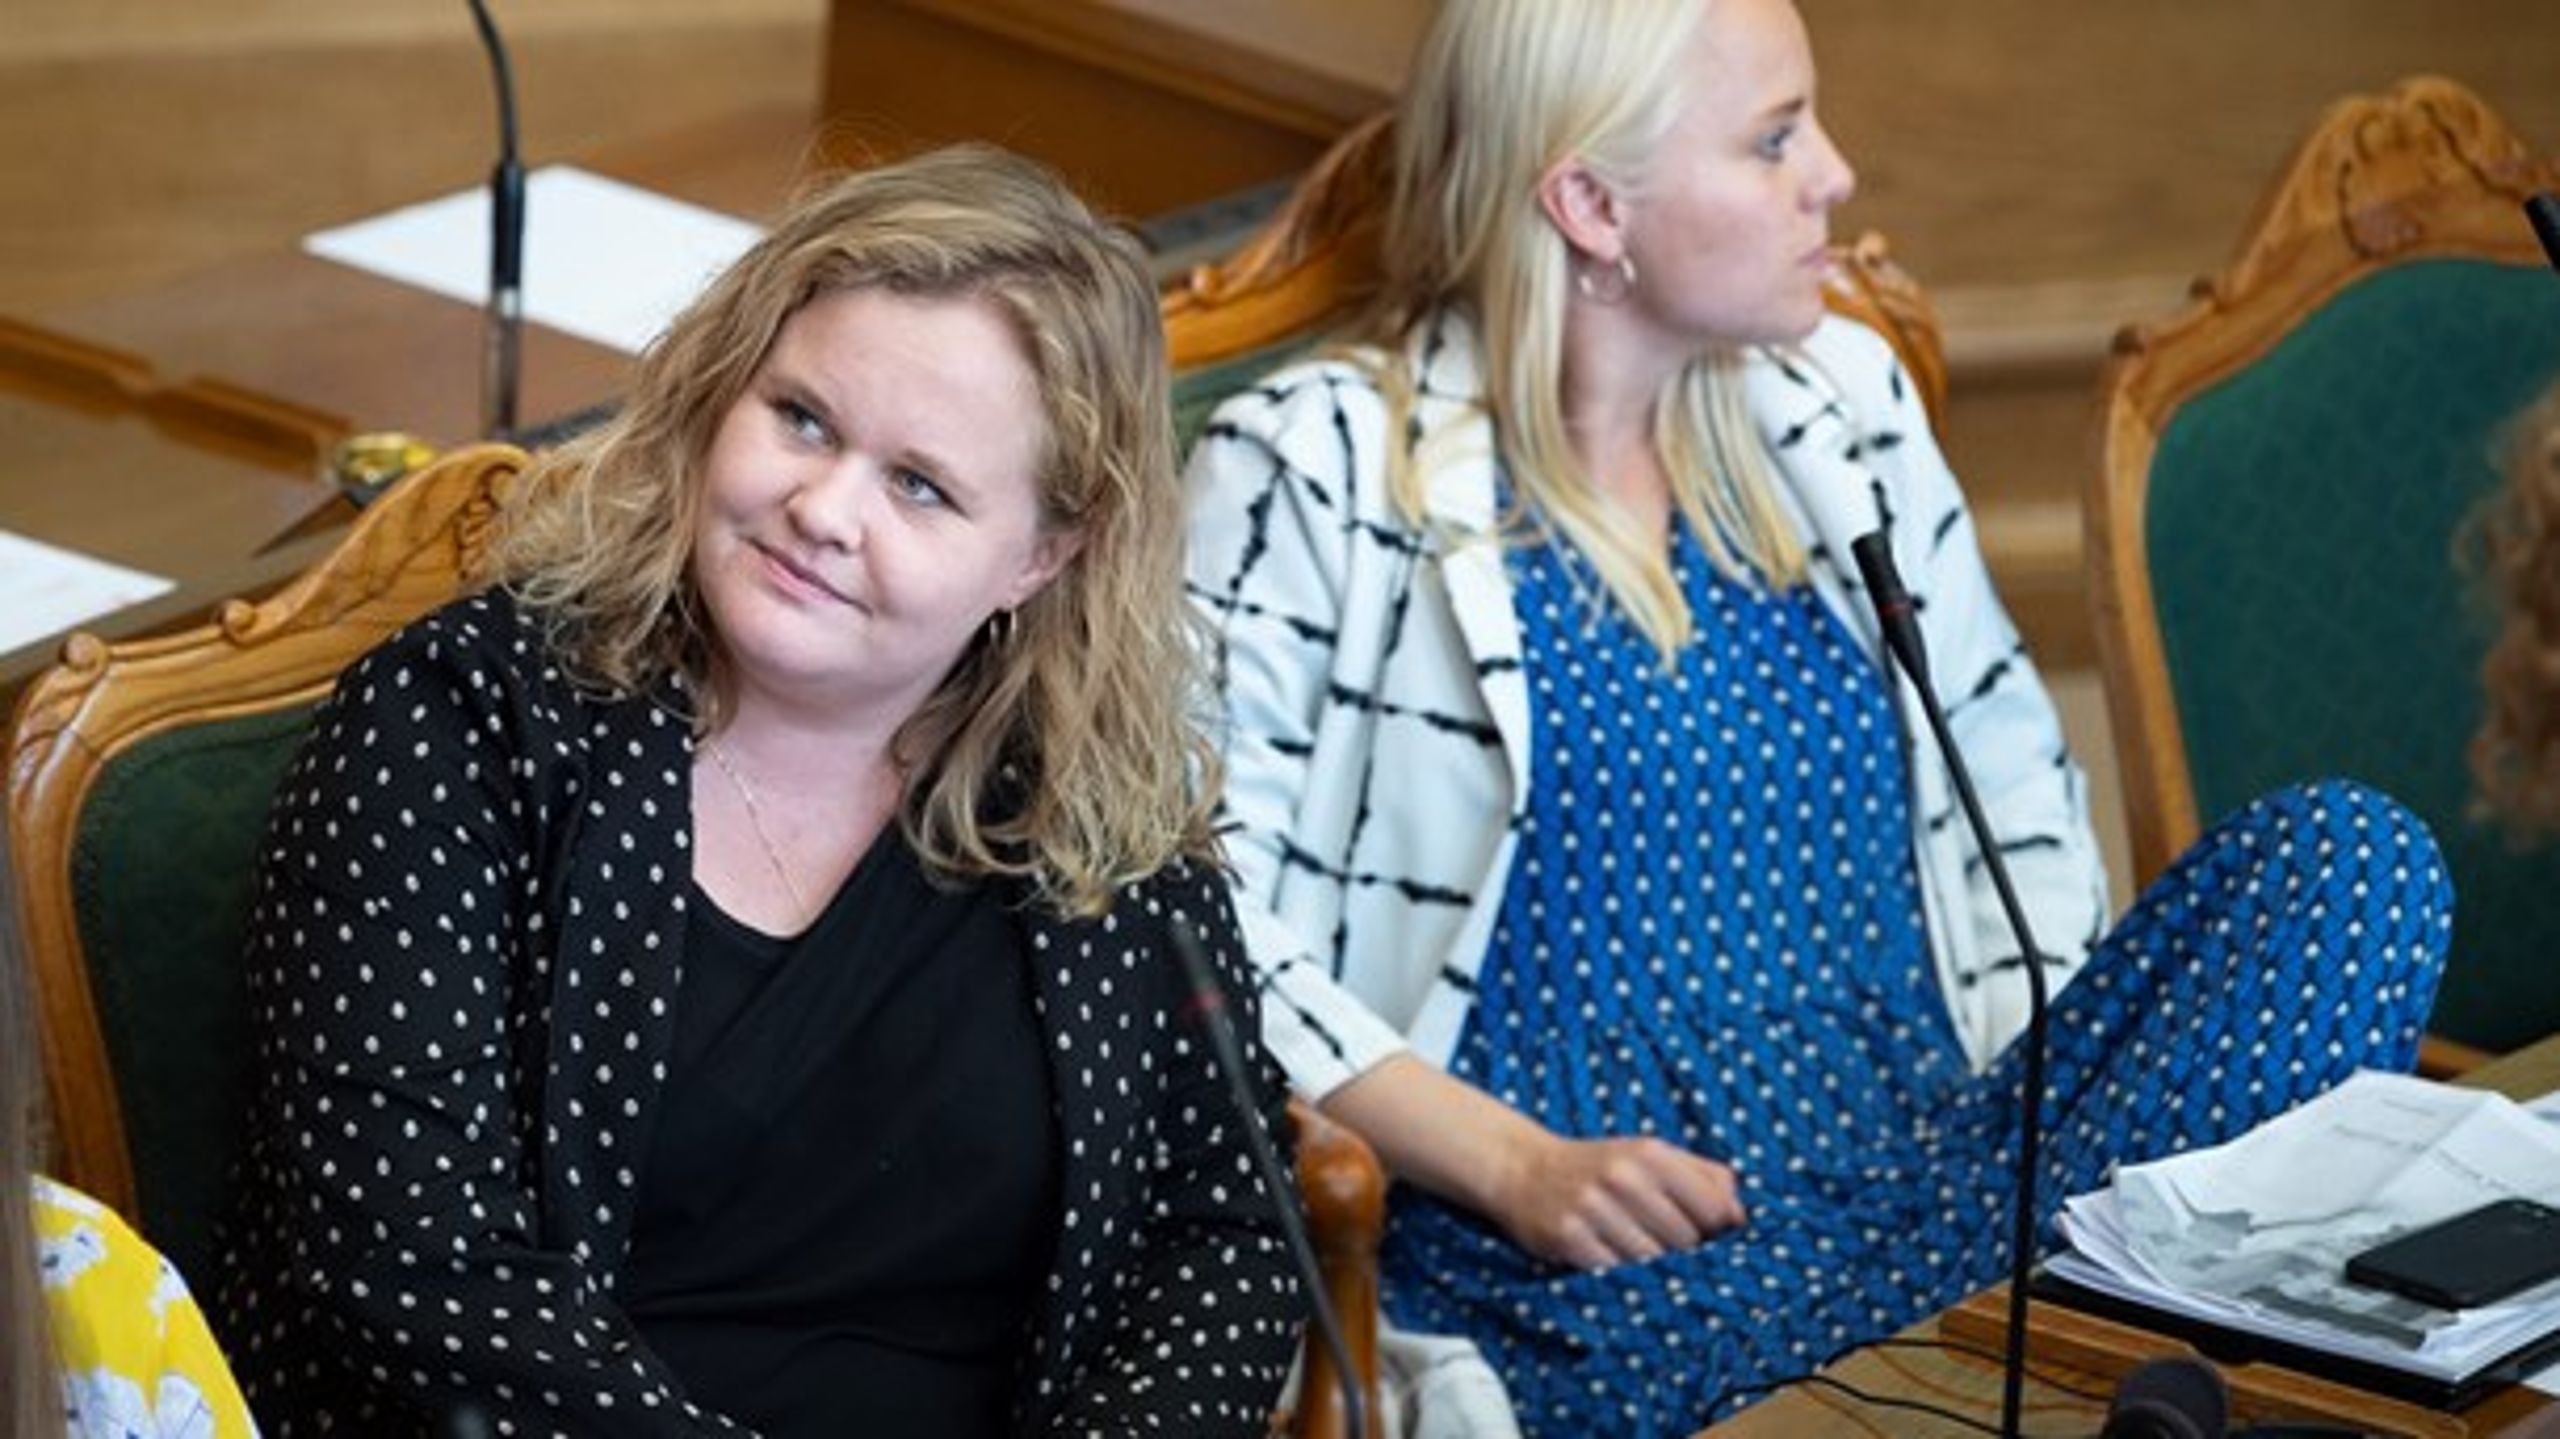 Fra venstre: Astrid Carøe og Signe Munk
fra SF under åbningsdebatten i Folketinget, oktober 2019.